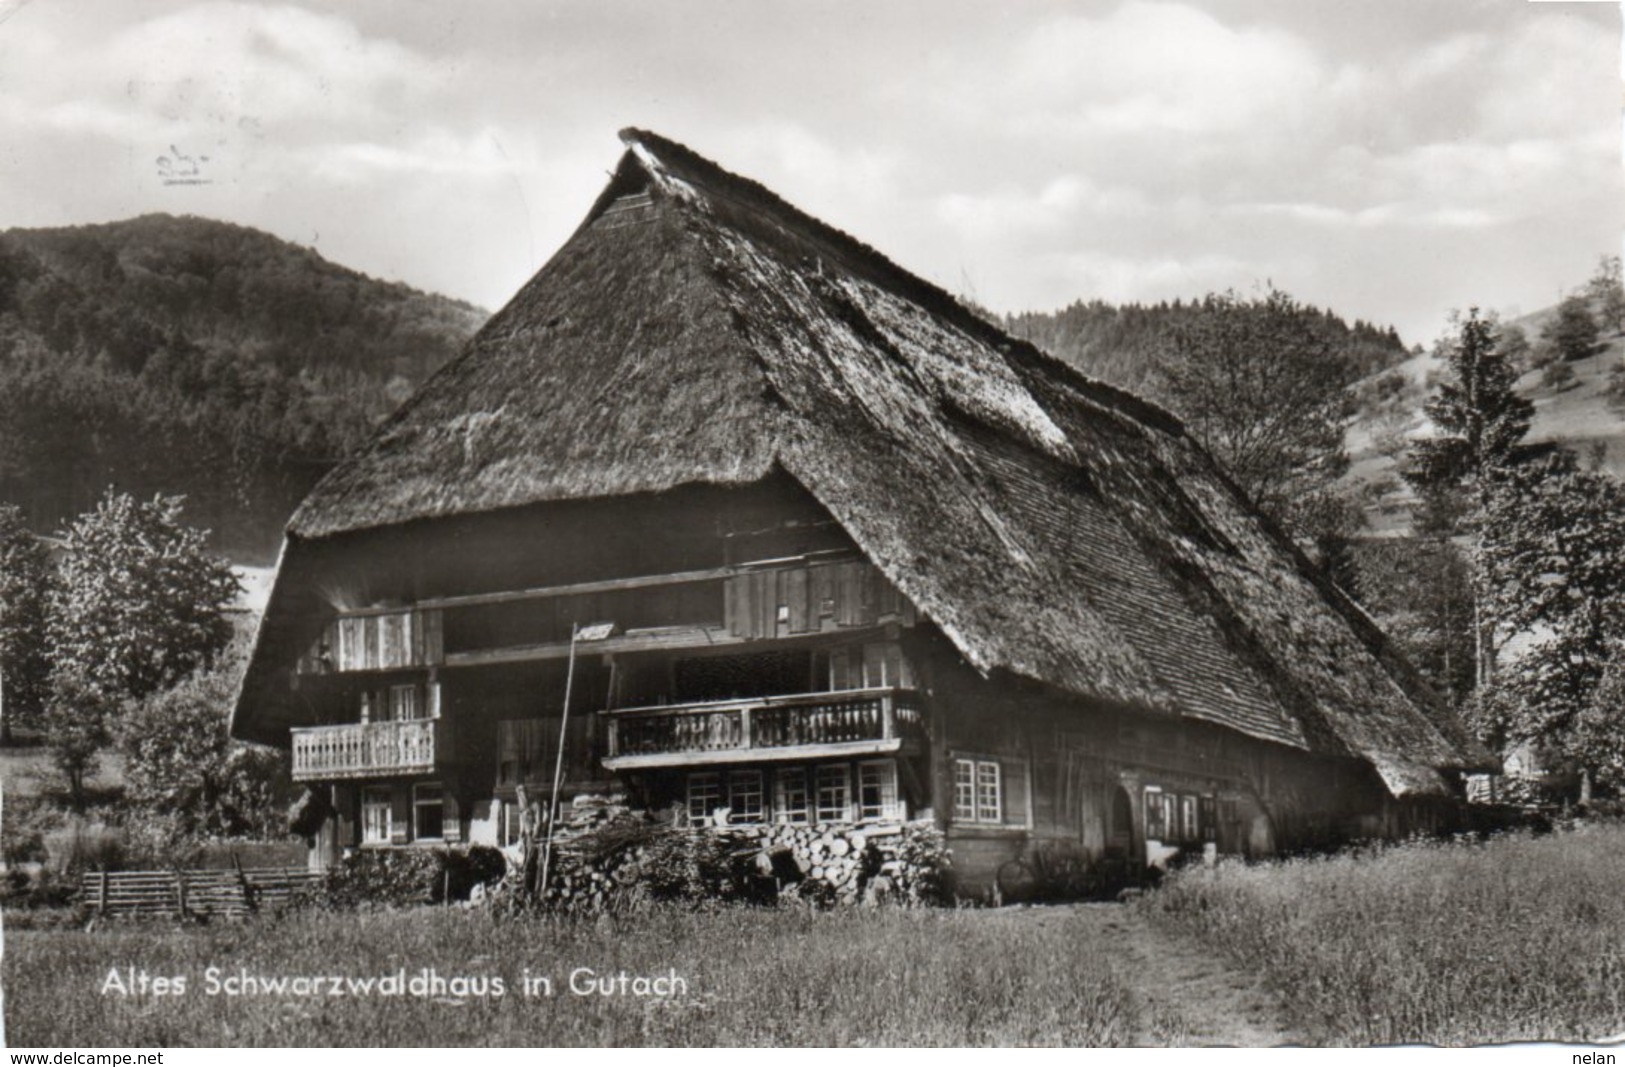 ALTES SCHWARZWALDHAUS IN GUTACH- VIAGGIATA 1968-REAL PHOTO - Gutach (Schwarzwaldbahn)